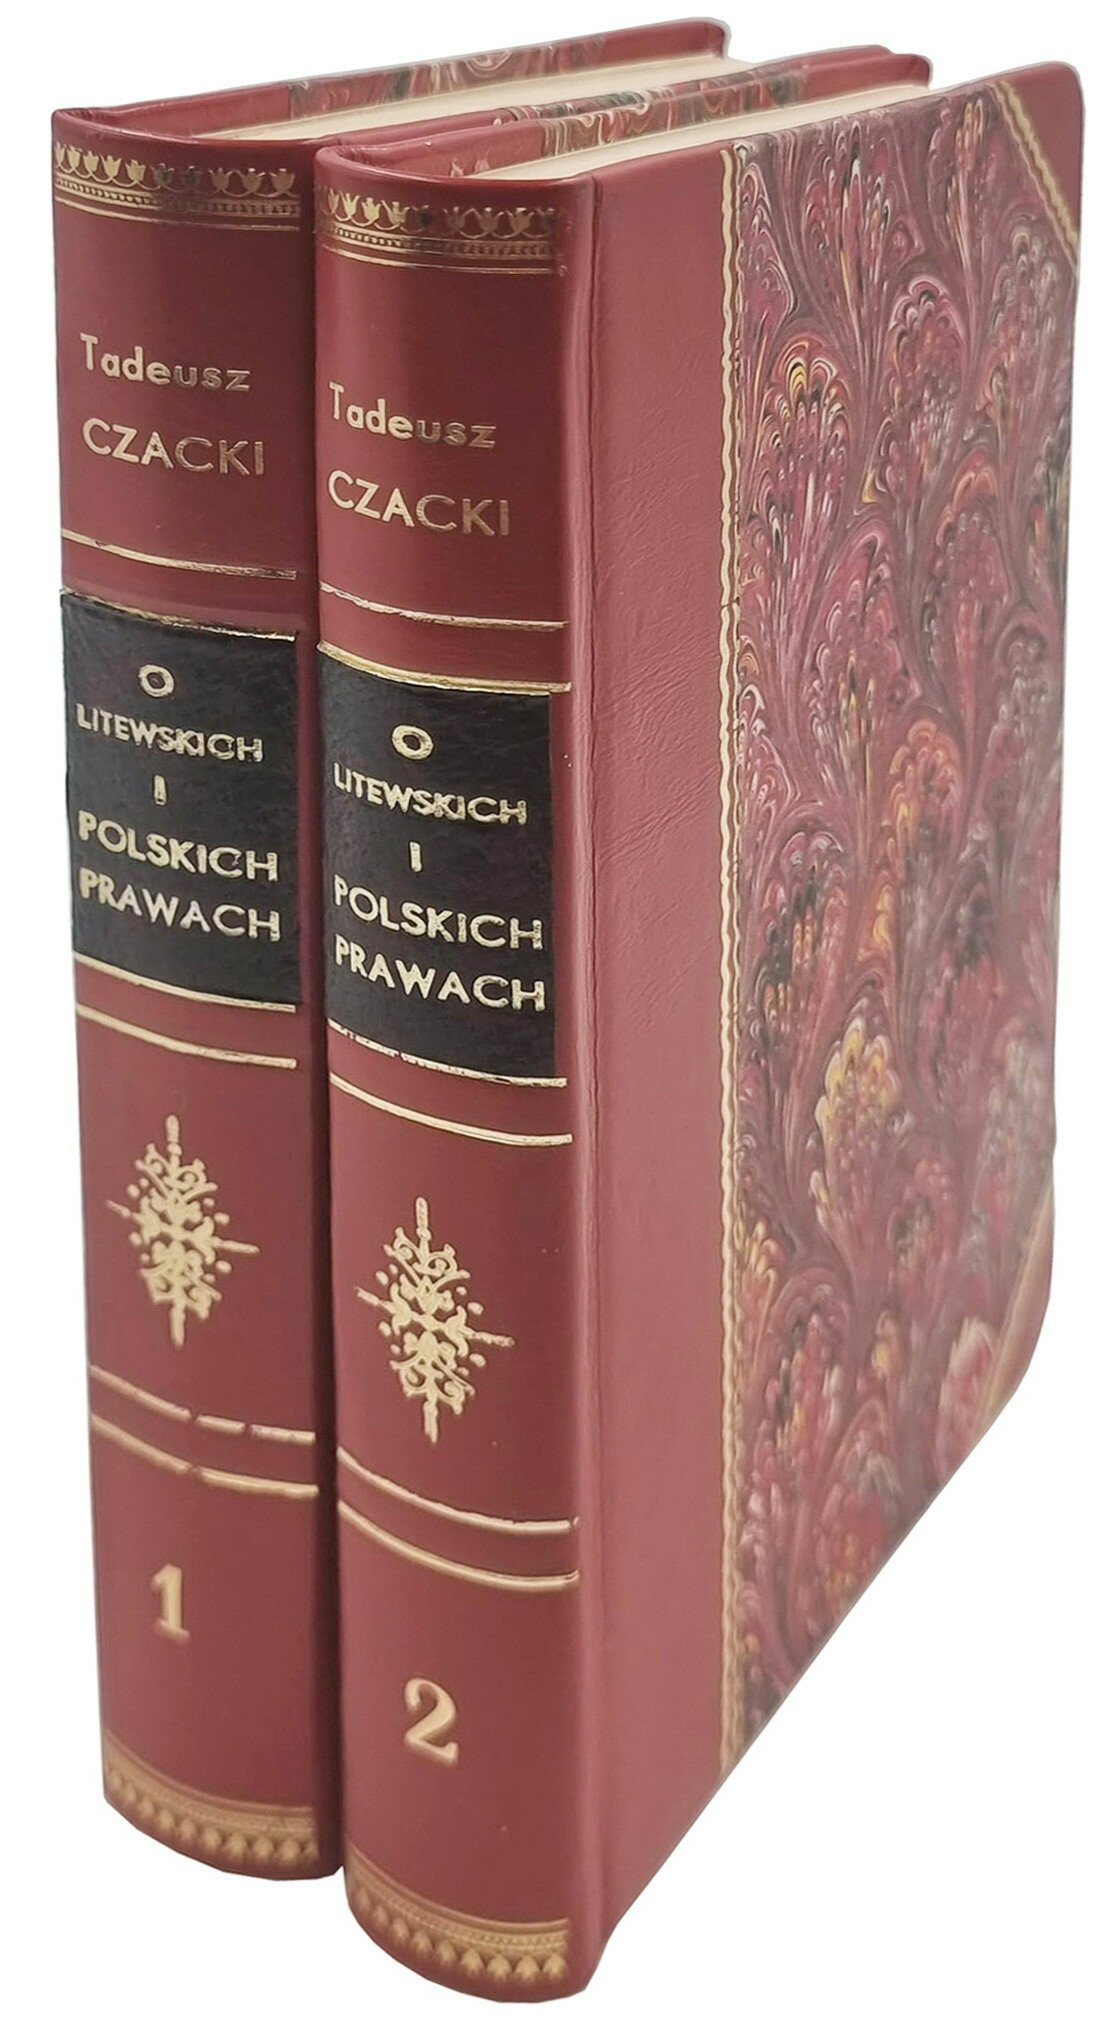 Czacki Tadeusz, „O litewskich i polskich prawach” tom I i II, 1861 r. – KOMPLET